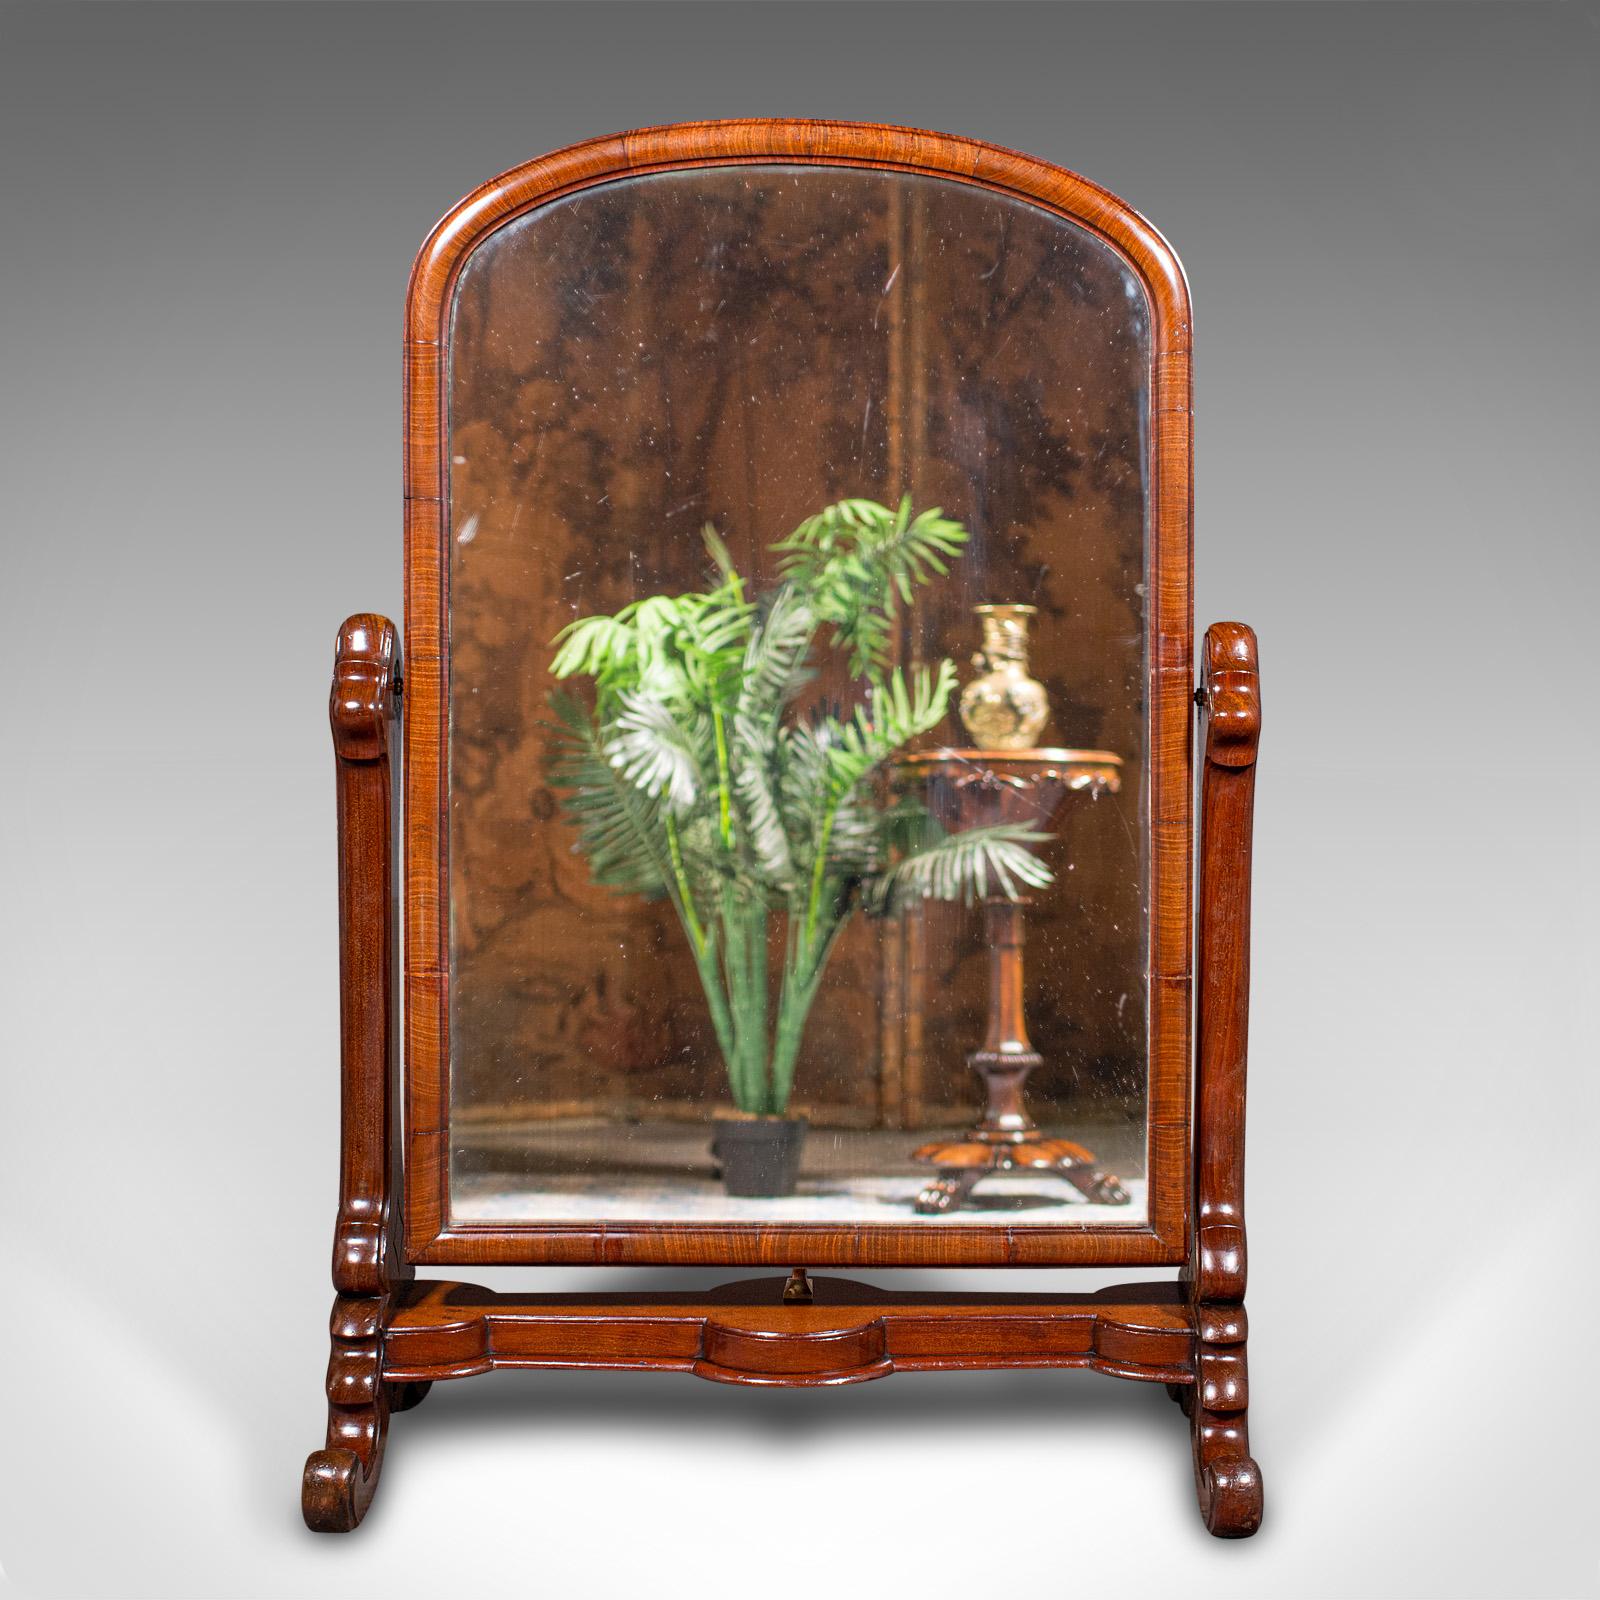 Il s'agit d'un ancien miroir de bottier. Miroir chevaleresque anglais en acajou et verre, datant du début de la période victorienne, vers 1840.

Un profil bas fascinant, idéal pour la vente au détail ou sur une grande table de toilette.
Présente une